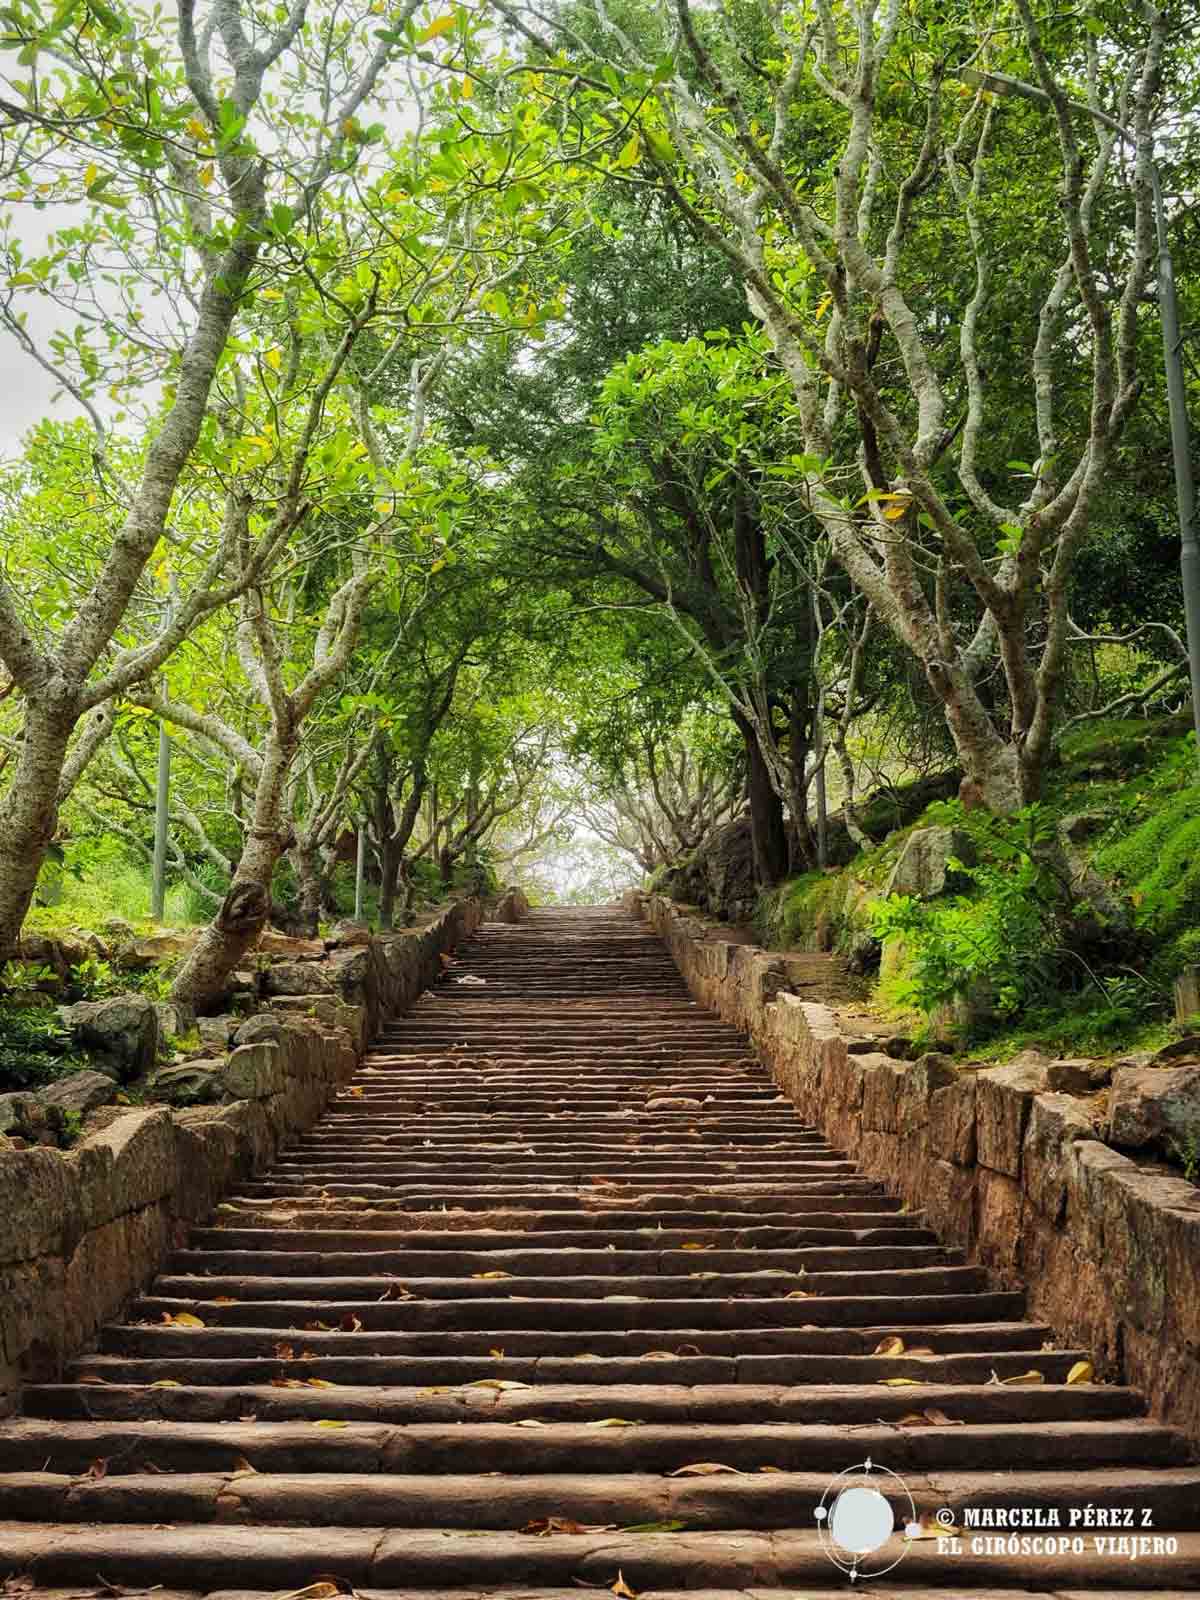 Escaleras que conducen a lo alto de la montaña sagrada de Mihintale